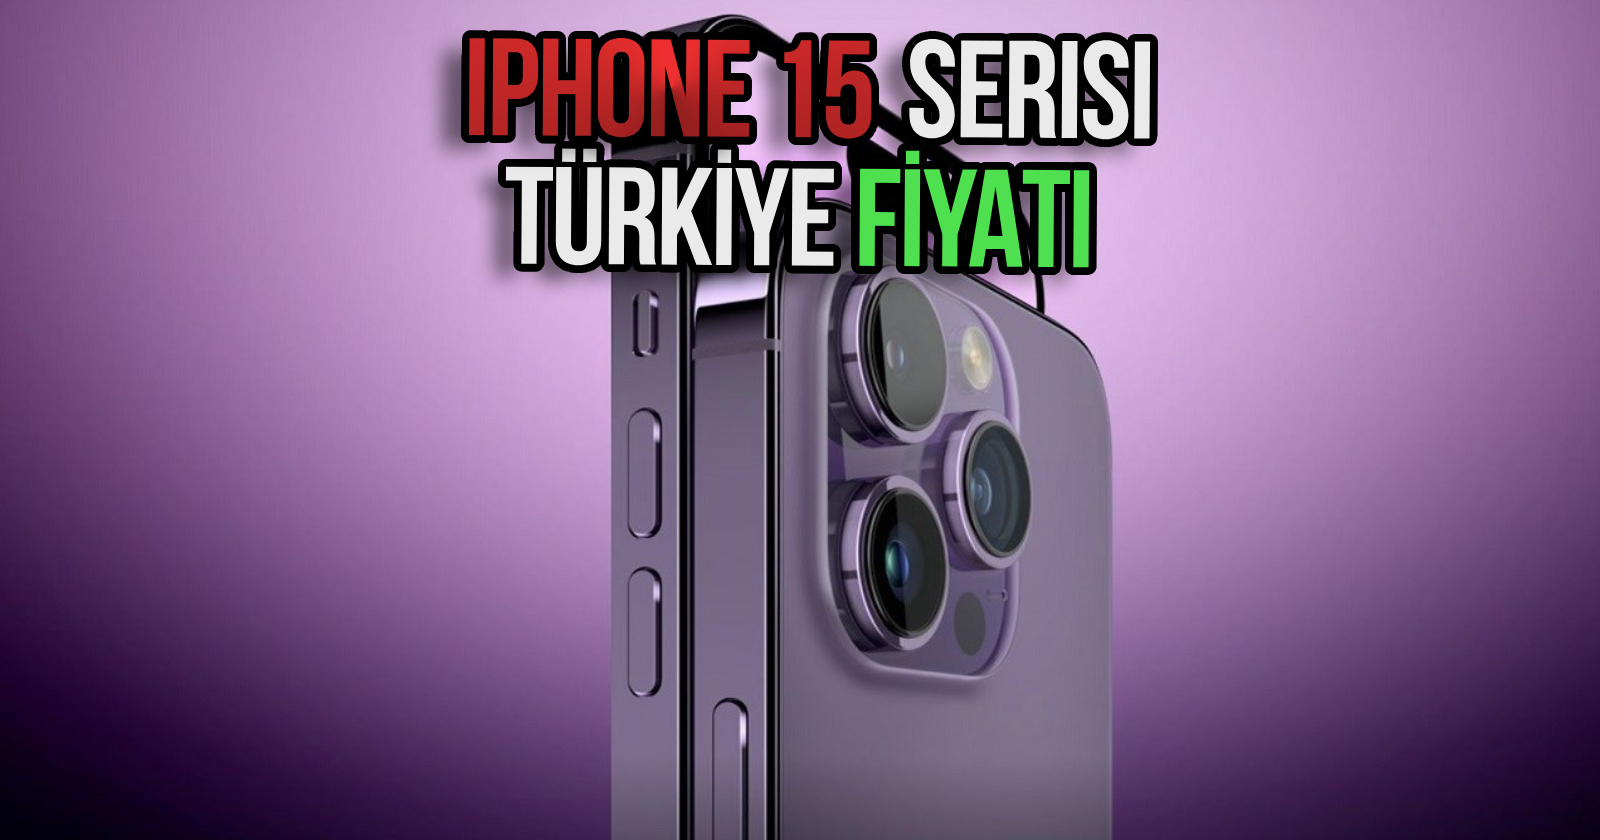 iphone-15-pro-max-turkiye-fiyati-beklenen-KAPAK.jpg